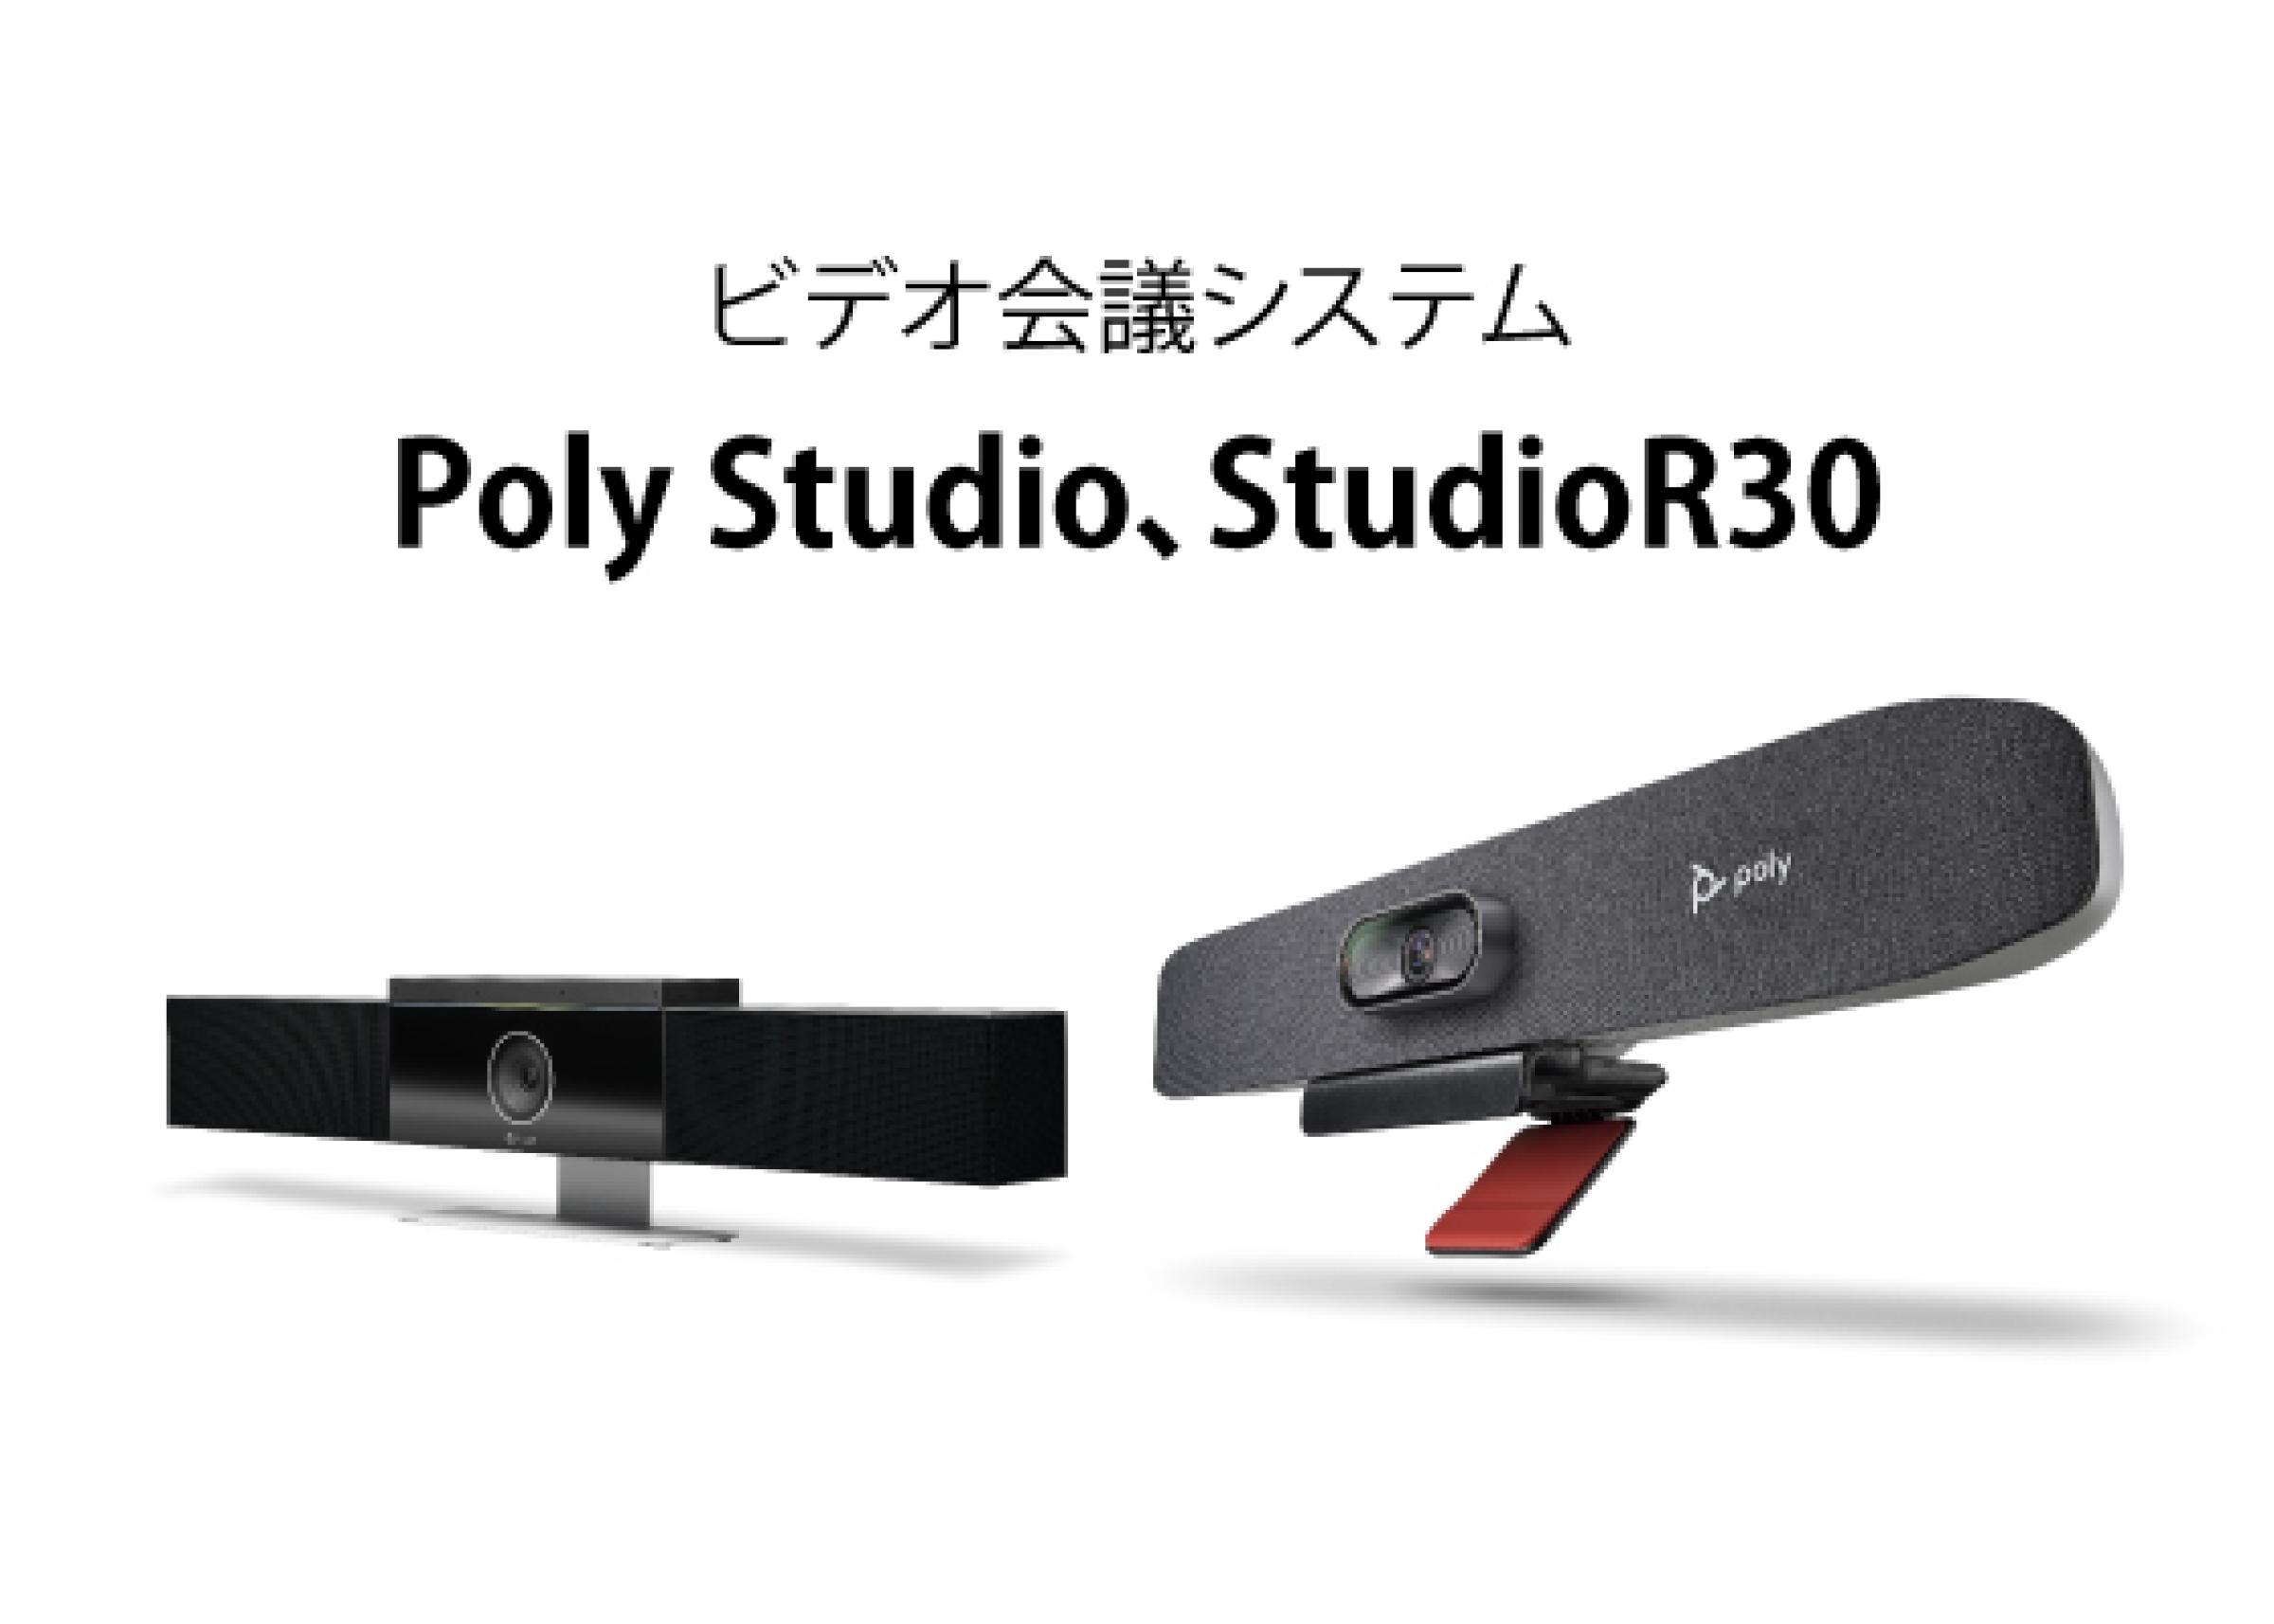 Poly Studio、StudioR30